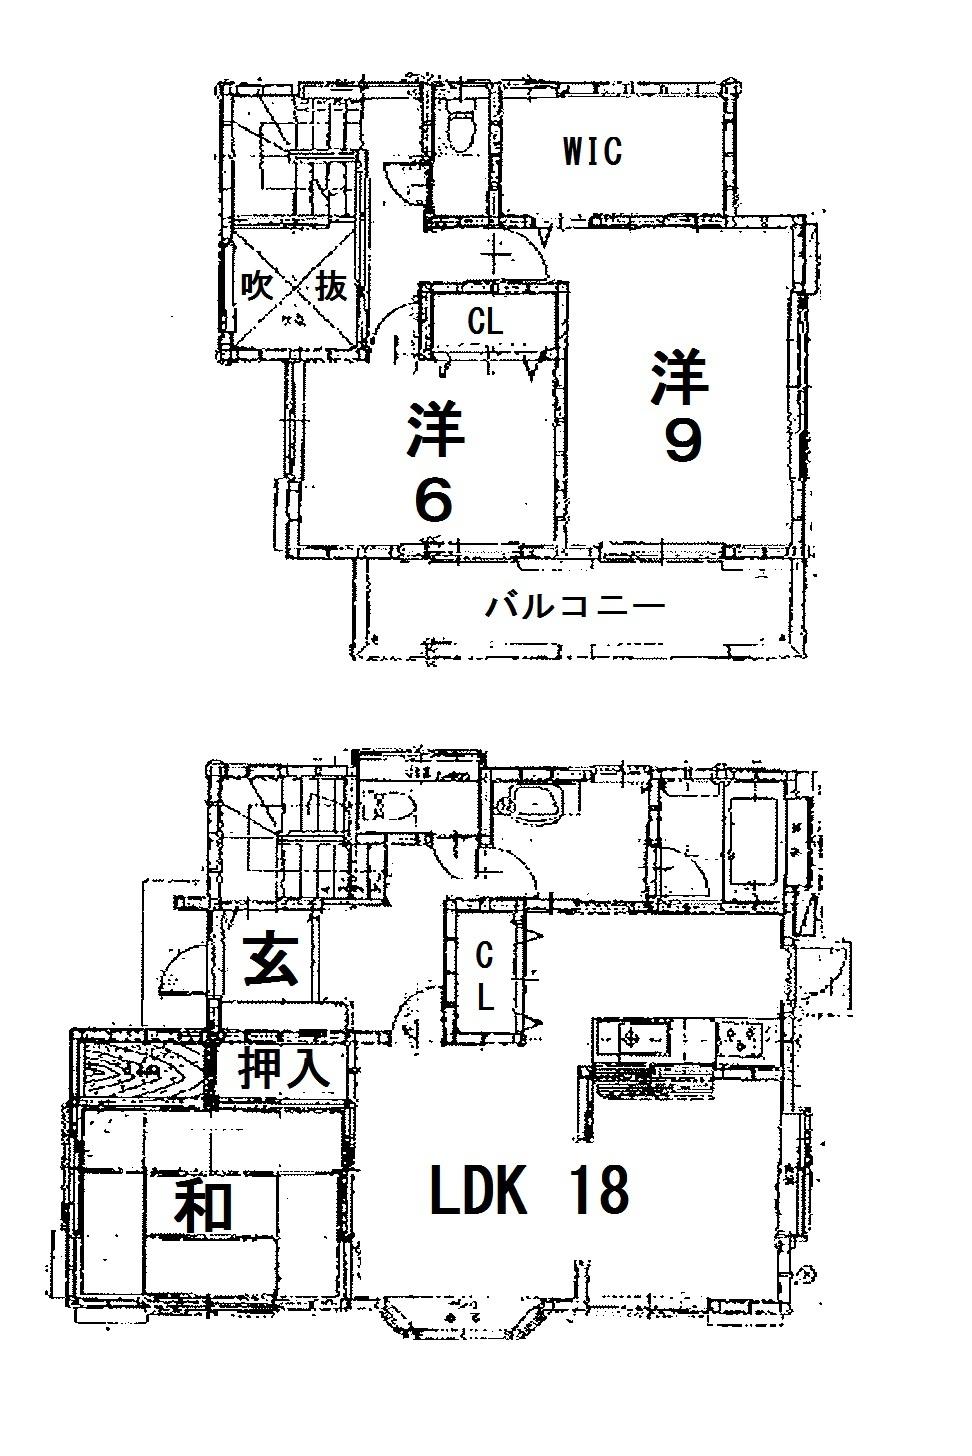 Floor plan. 10.9 million yen, 3LDK, Land area 180.63 sq m , Building area 104.51 sq m